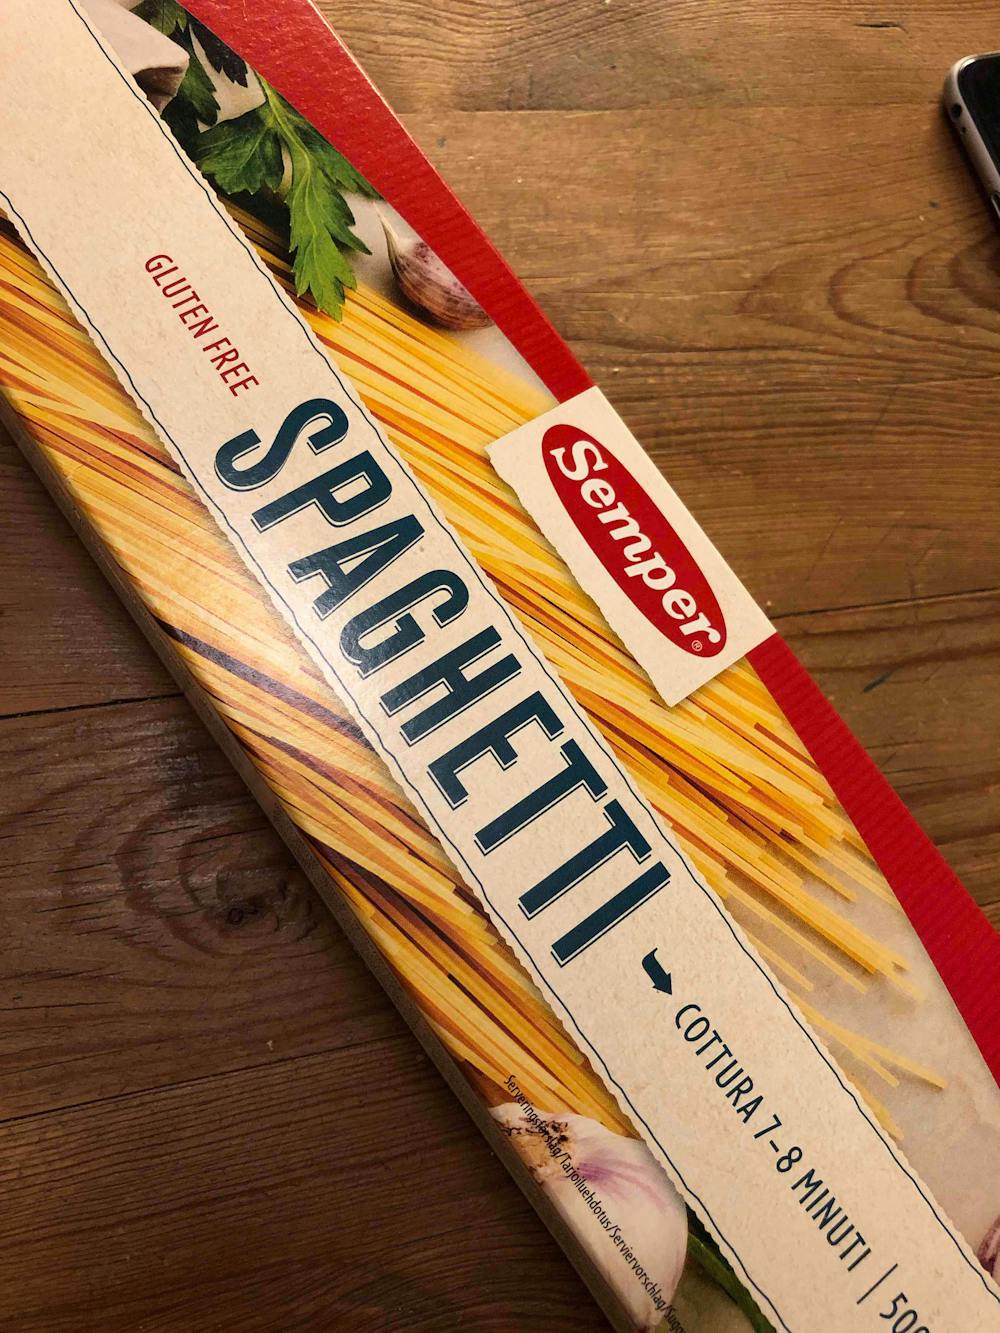 Spaghetti, Semper